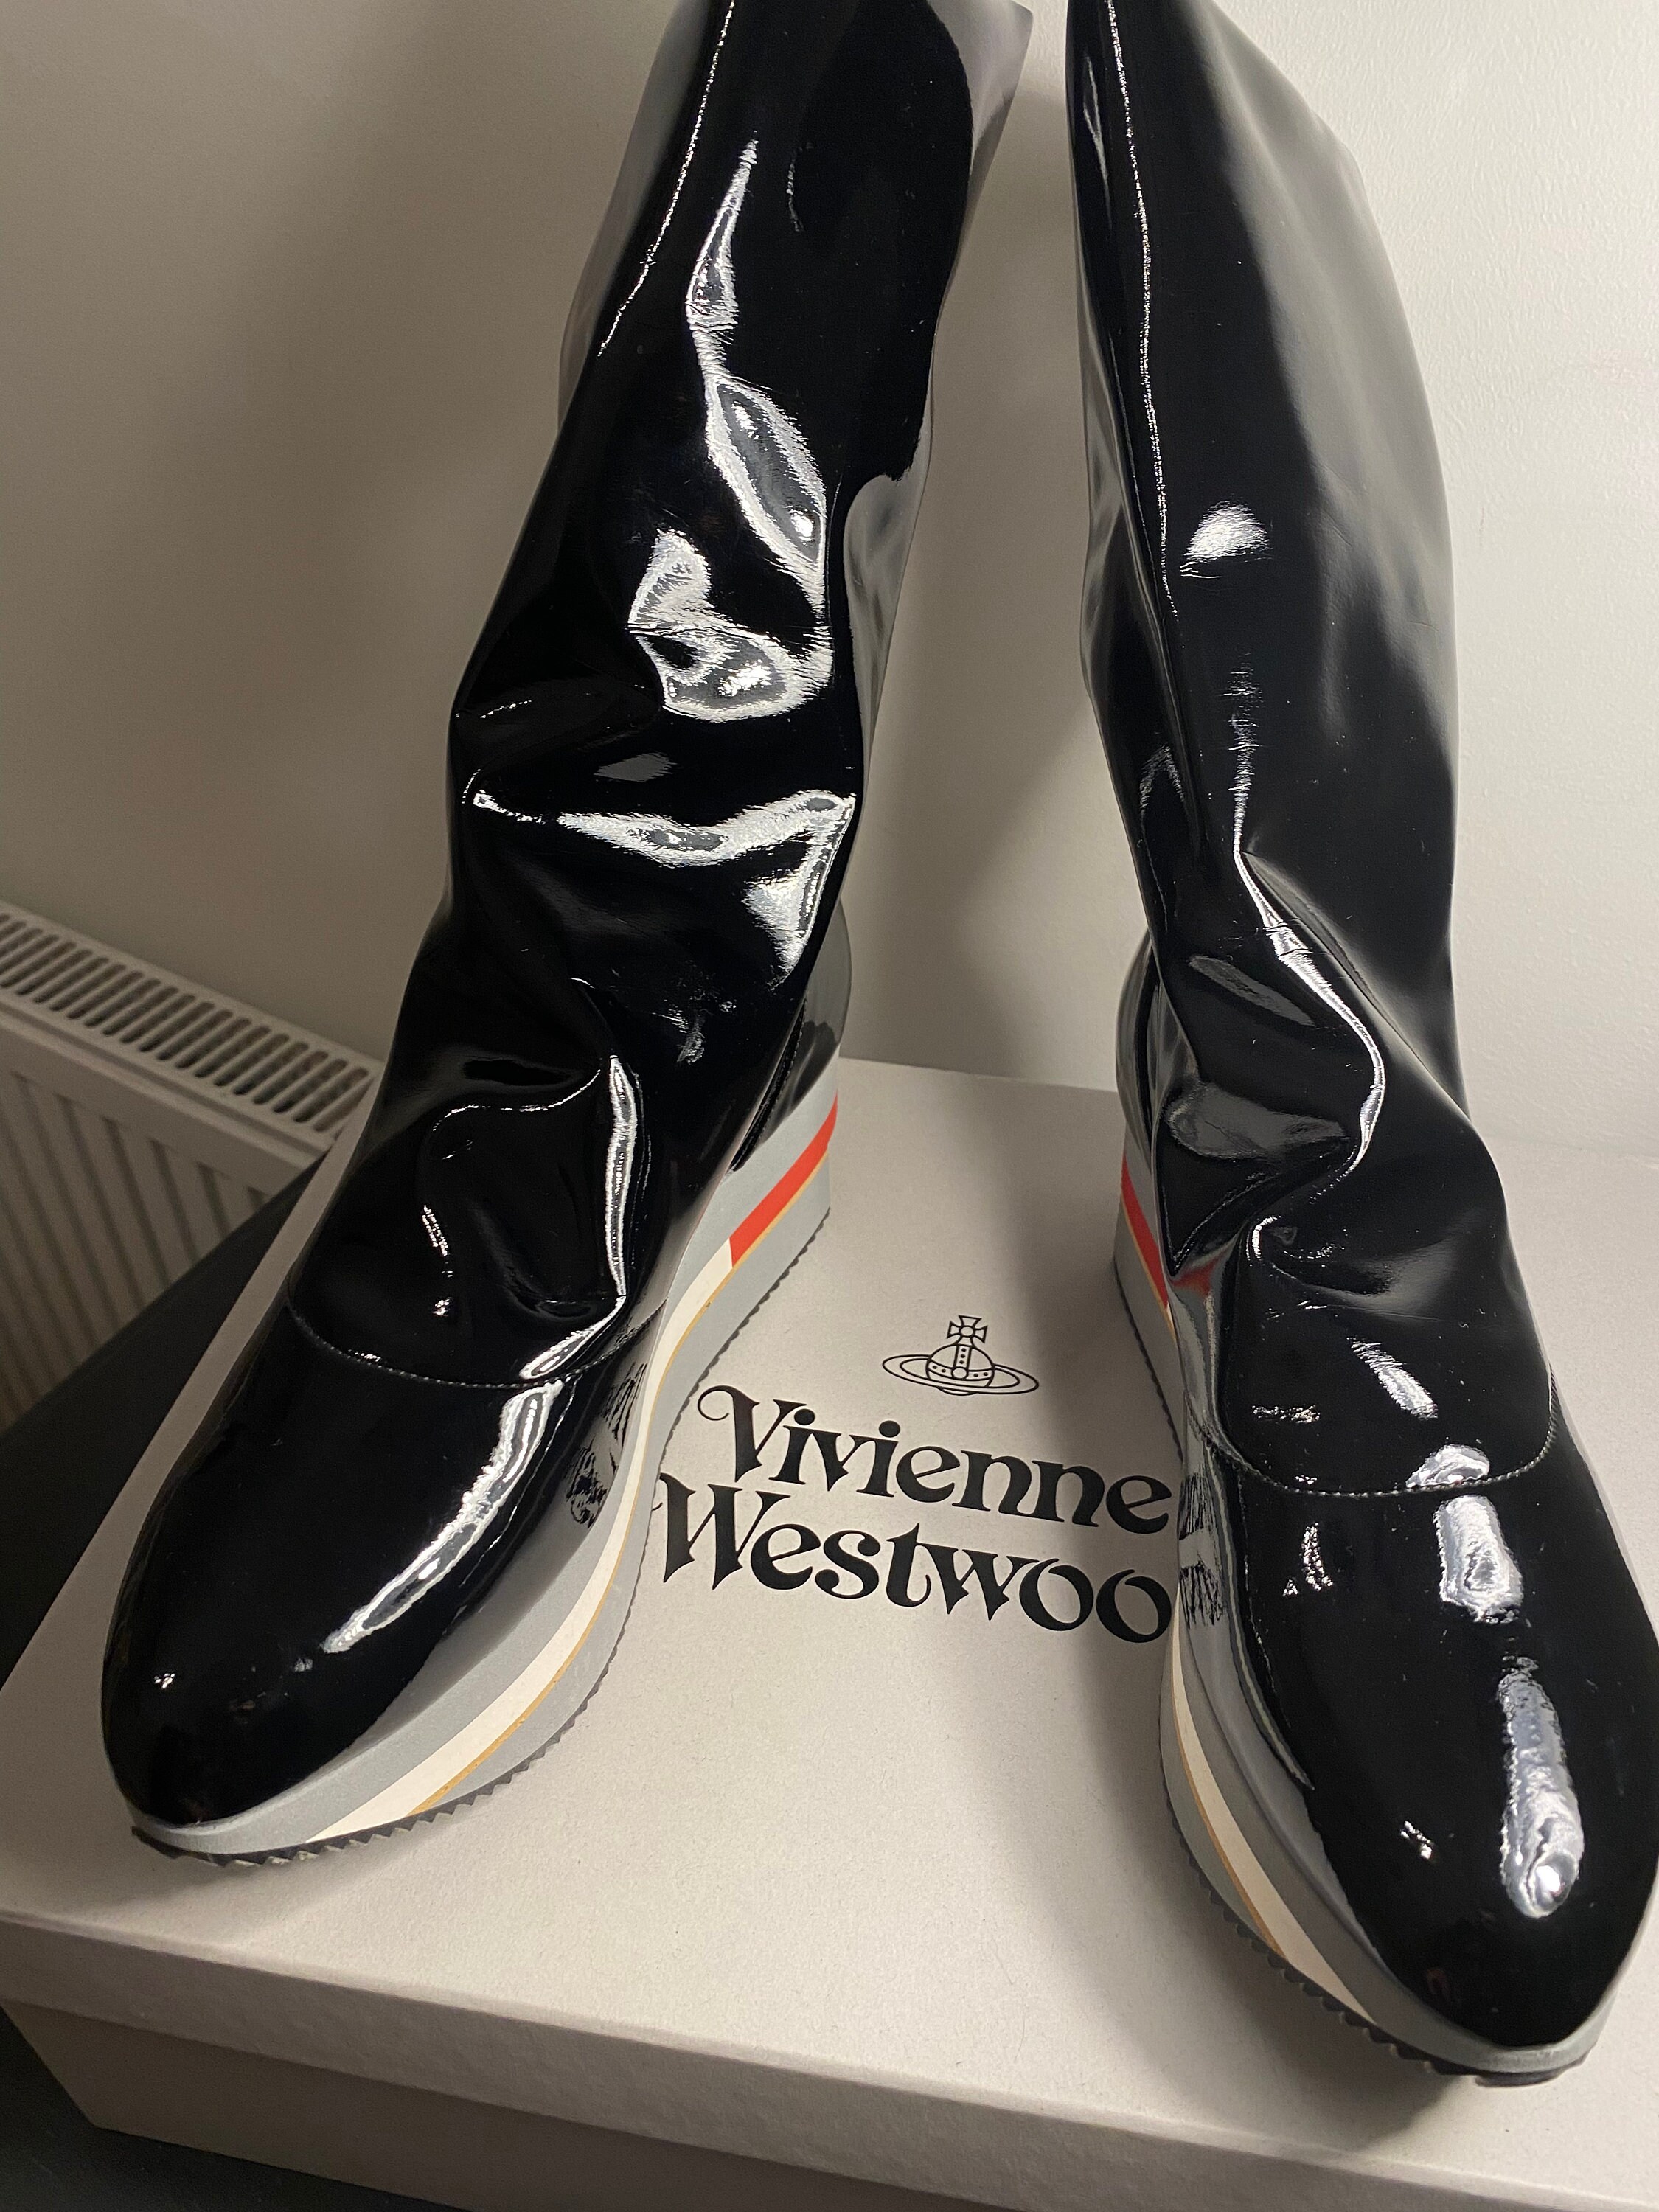 Vivienne Westwood Rocking Horse Shoes - Etsy UK